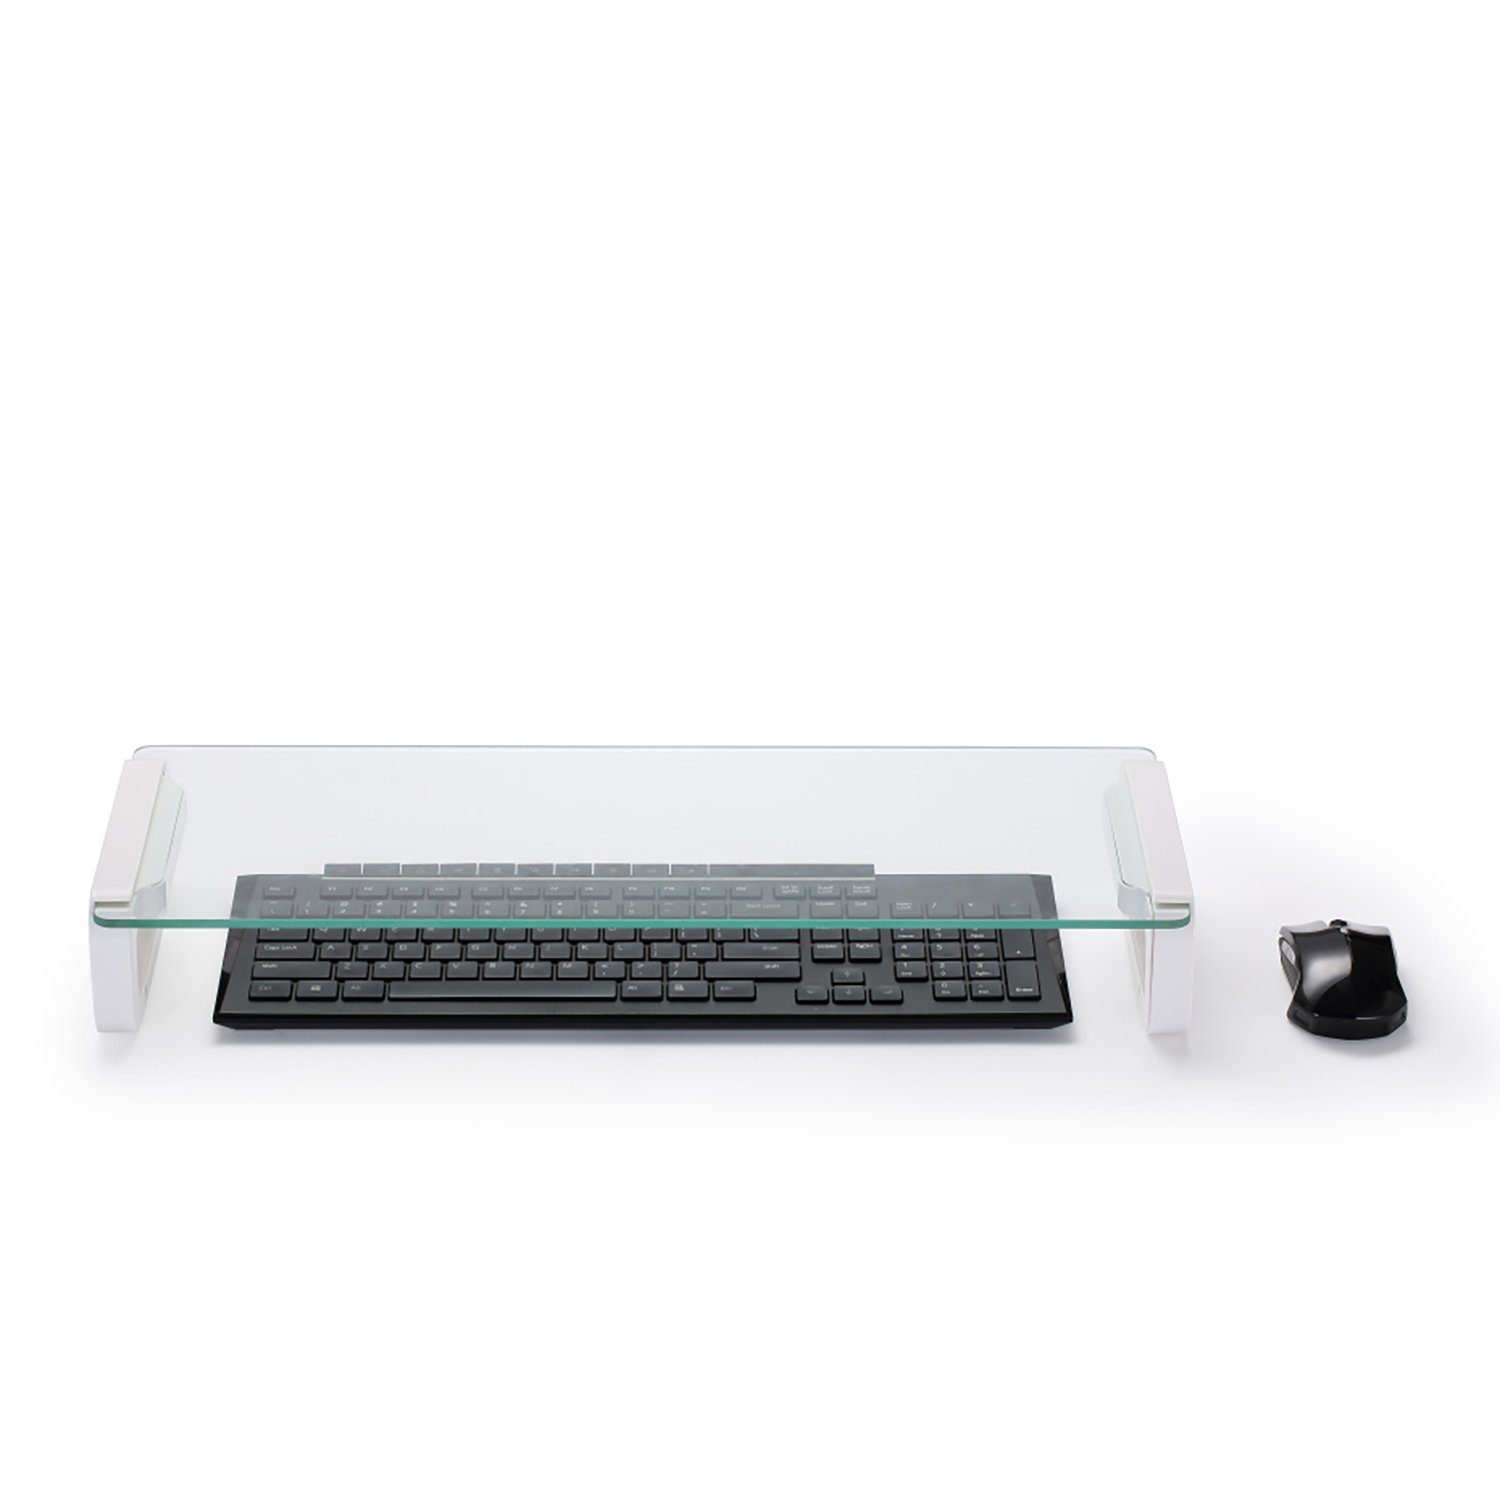 Gartengerätehalter Monitorständer MacBook, für SLABO Monitor, iMac, Plexiglas Notebook Aluminium